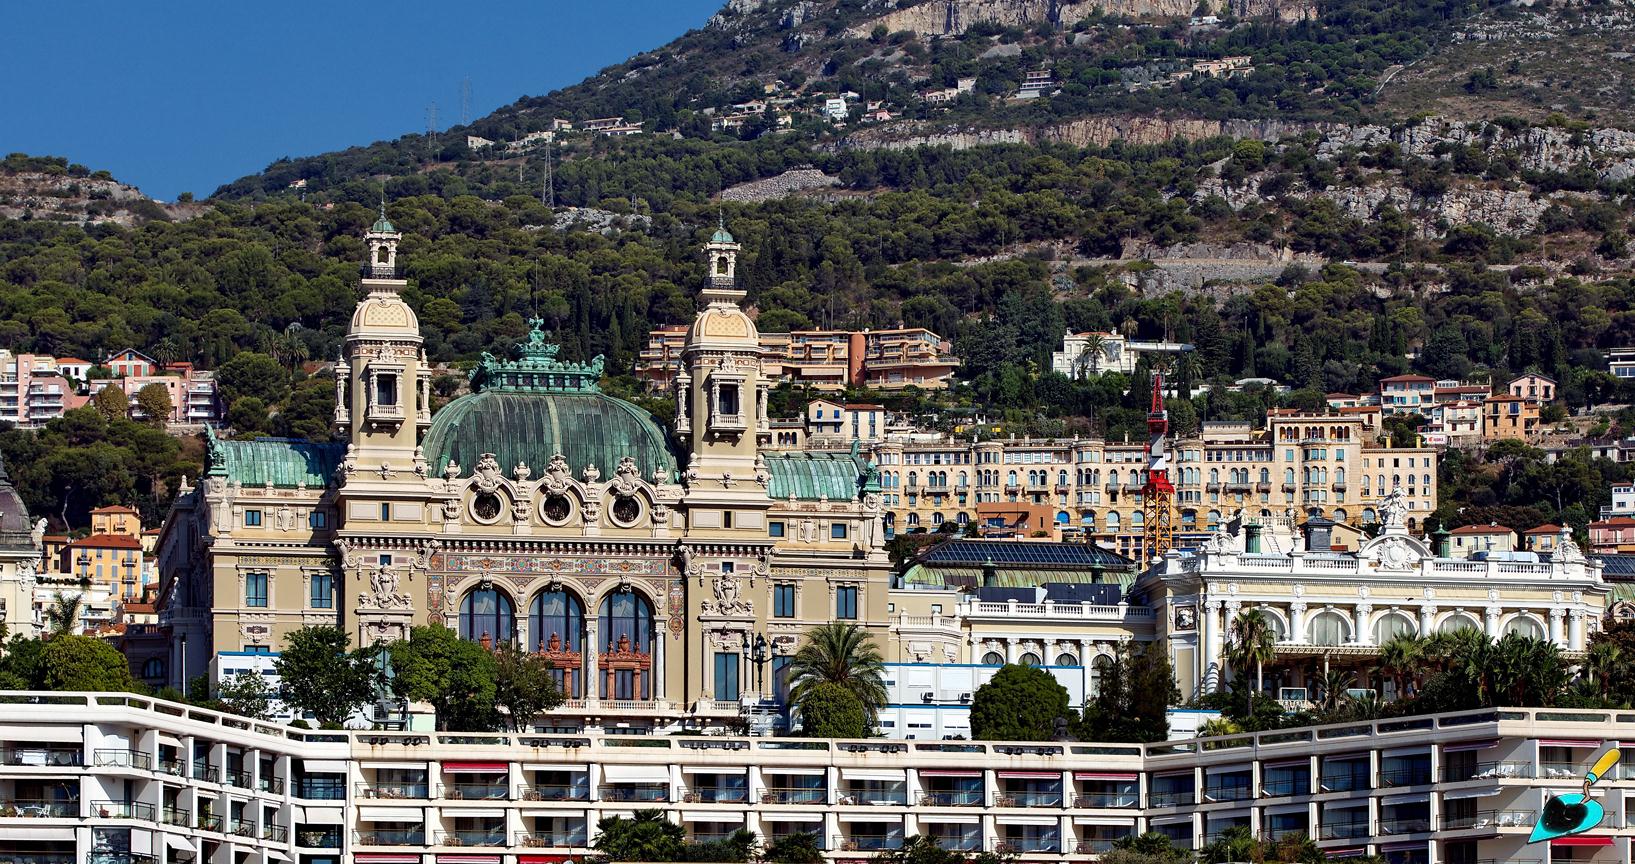 Монте-Карло, Place du Casino